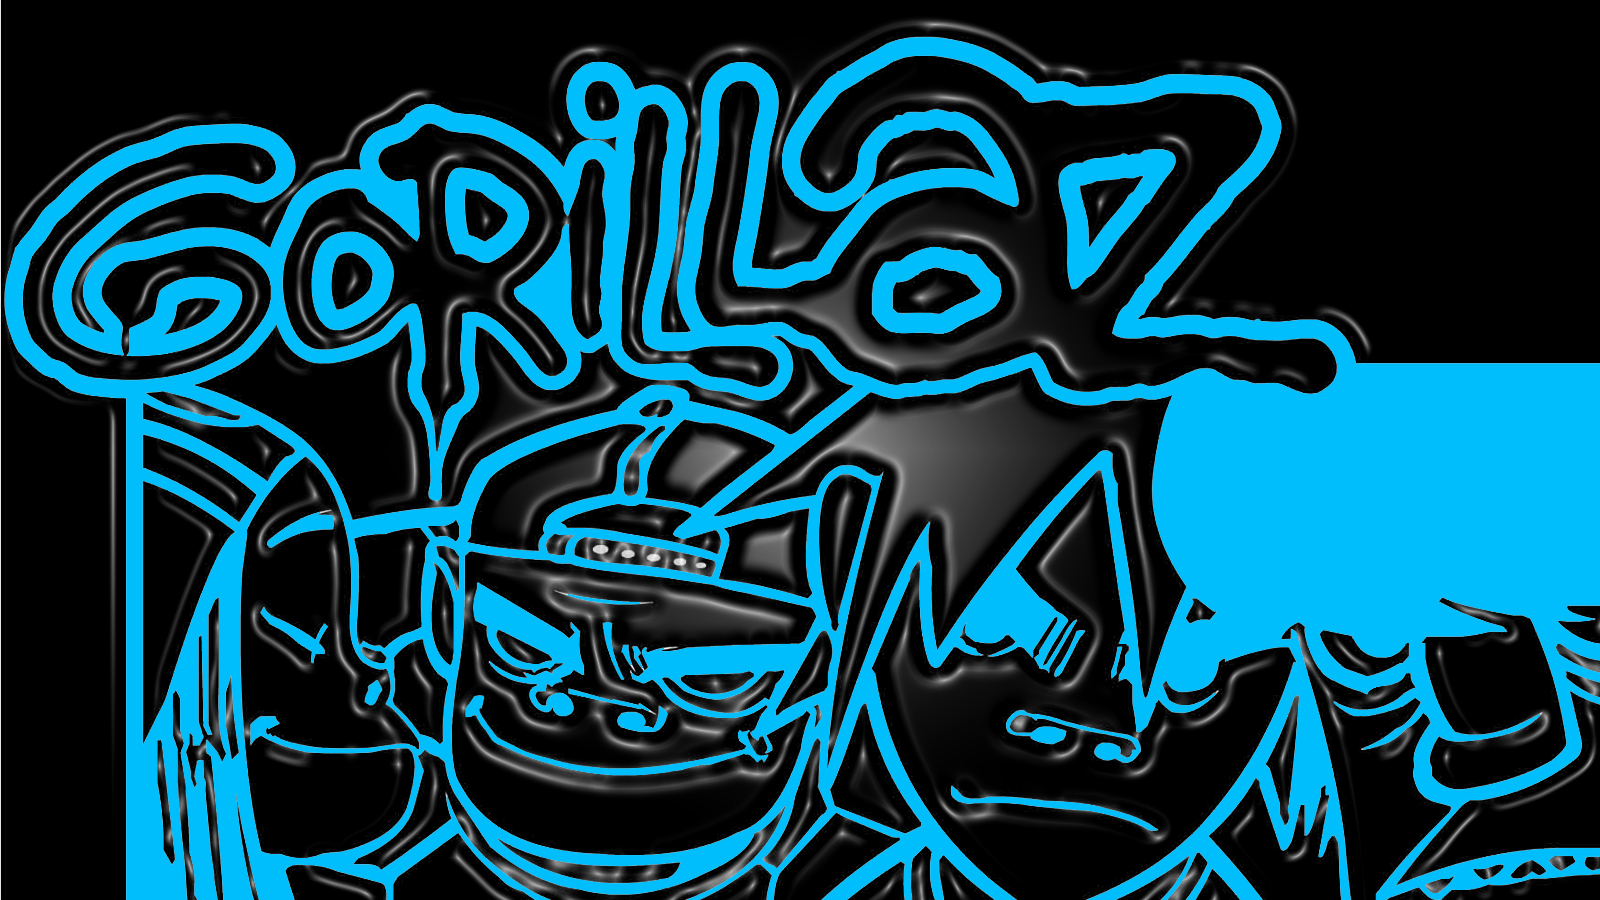 gorillaz, Cartoon Wallpaper